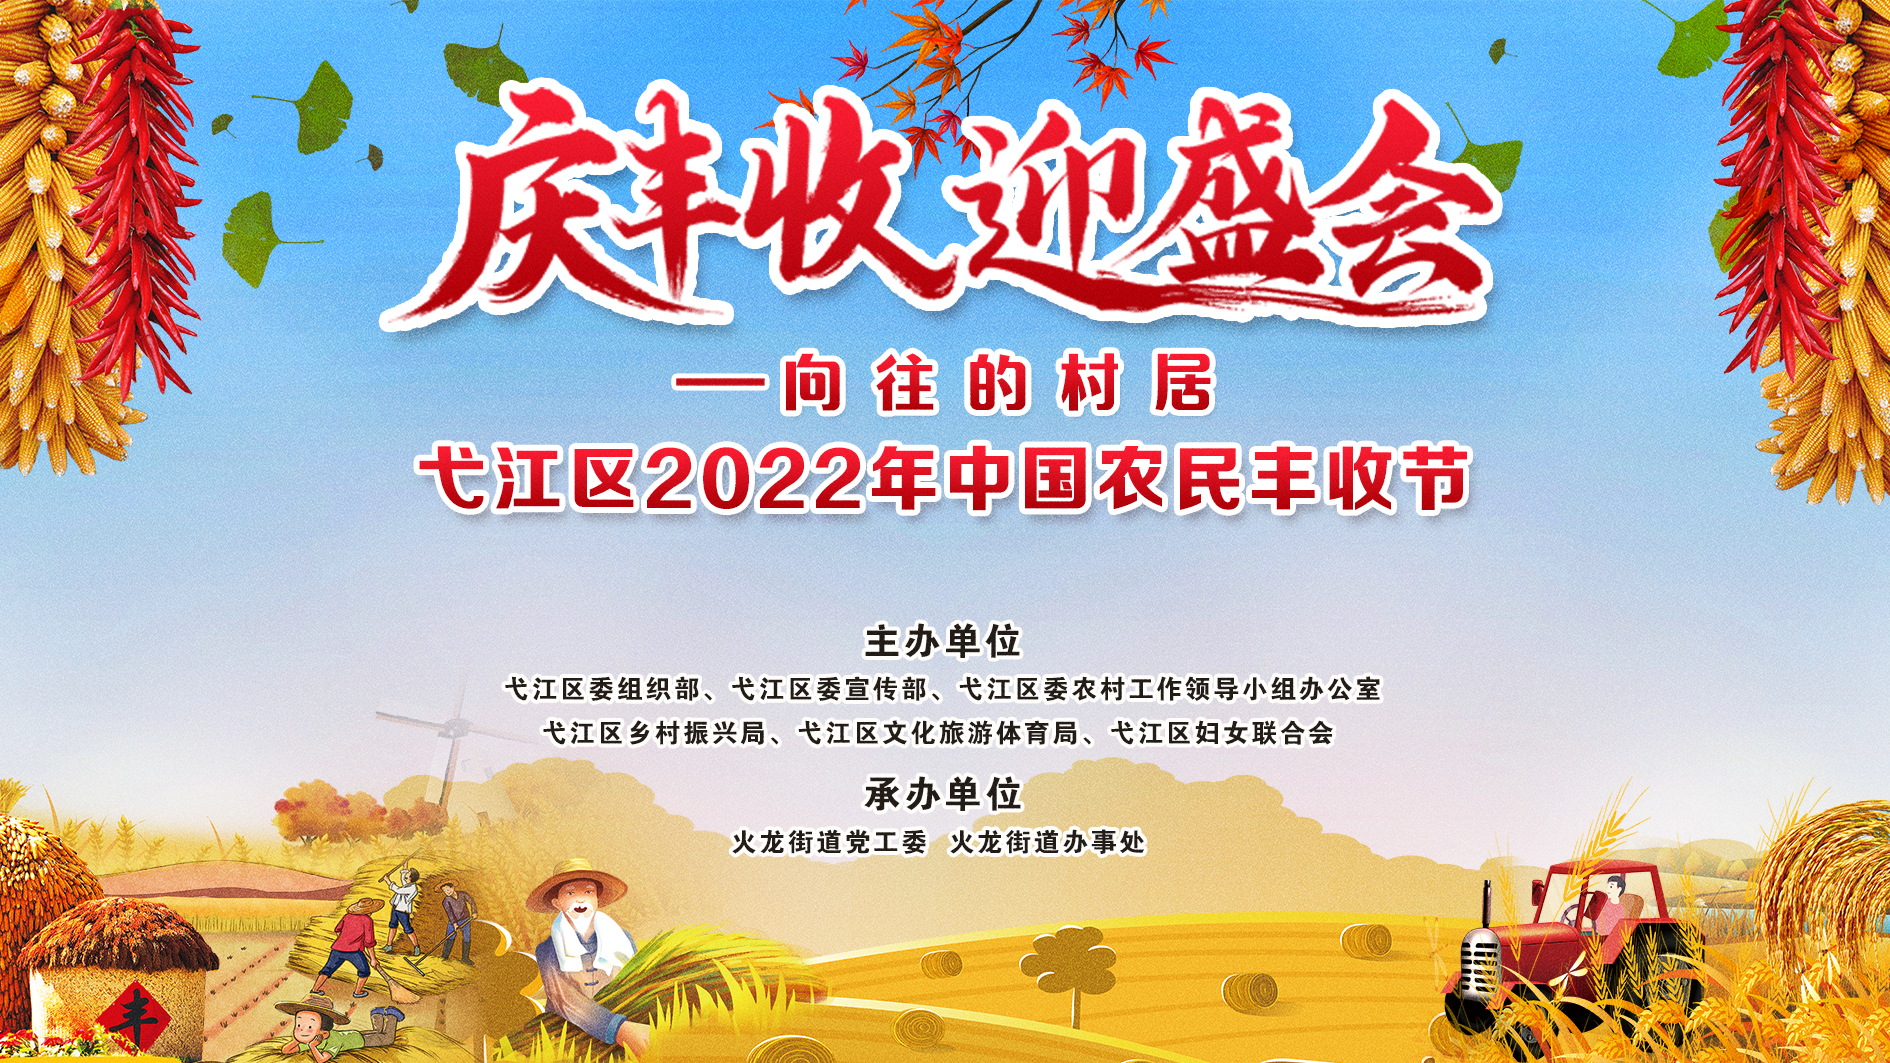 弋江区2022年中国农民丰收节